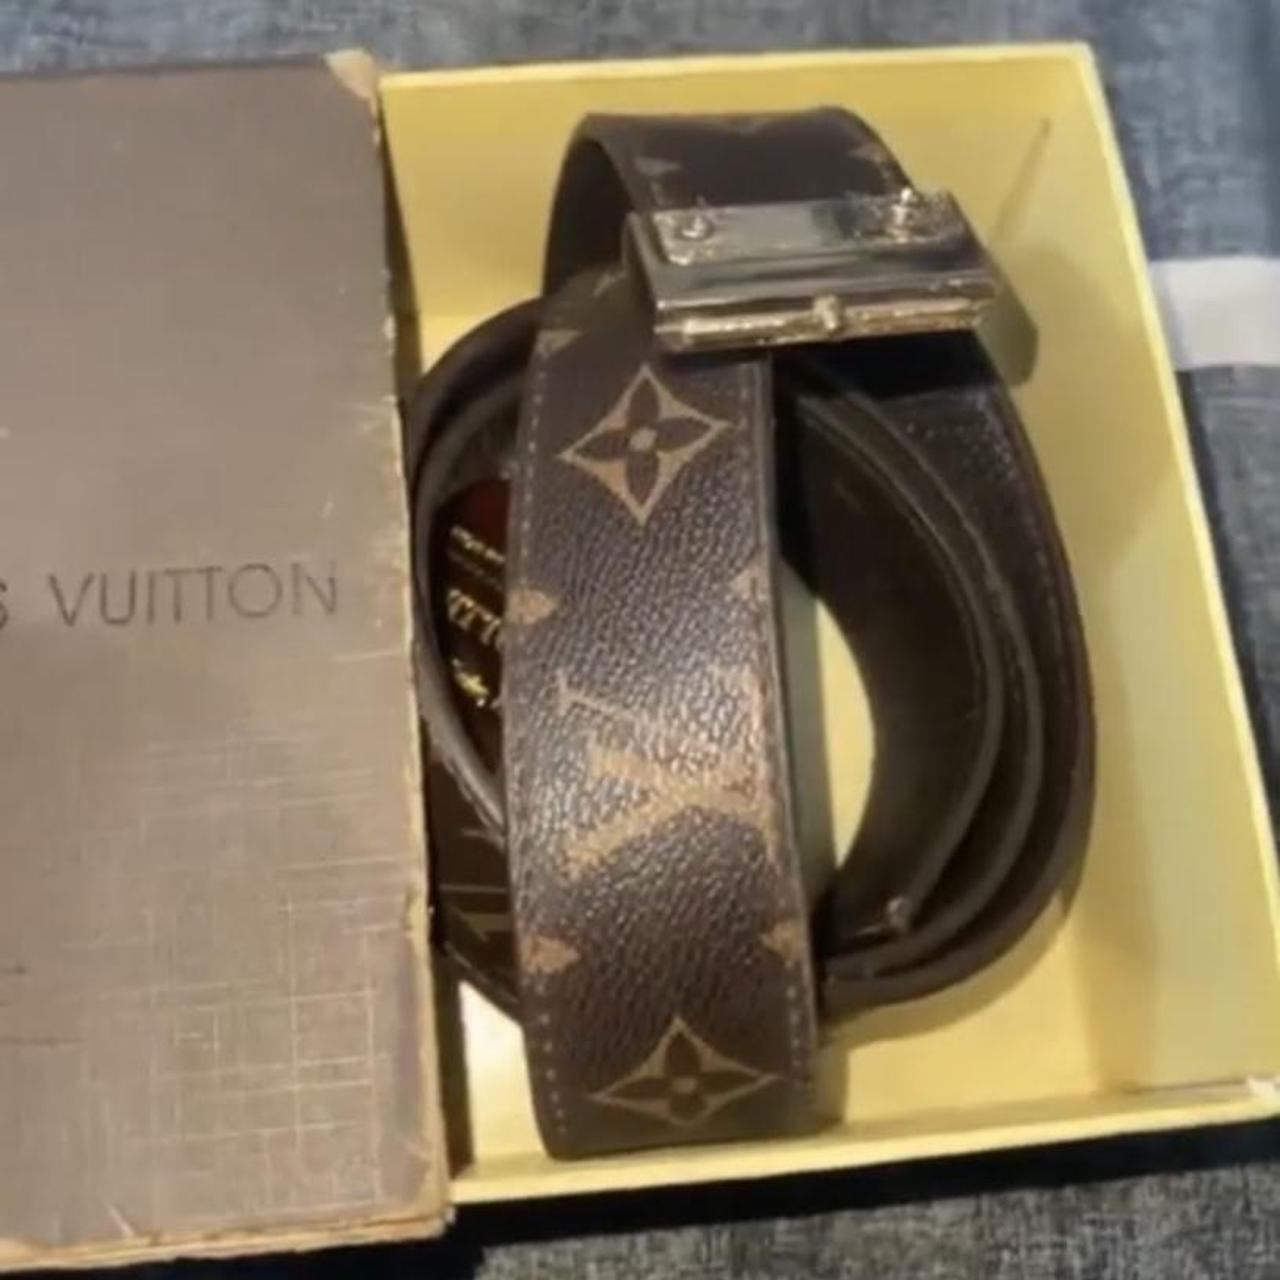 Vintage Louis Vuitton belt Broken buckle 8/10 - Depop